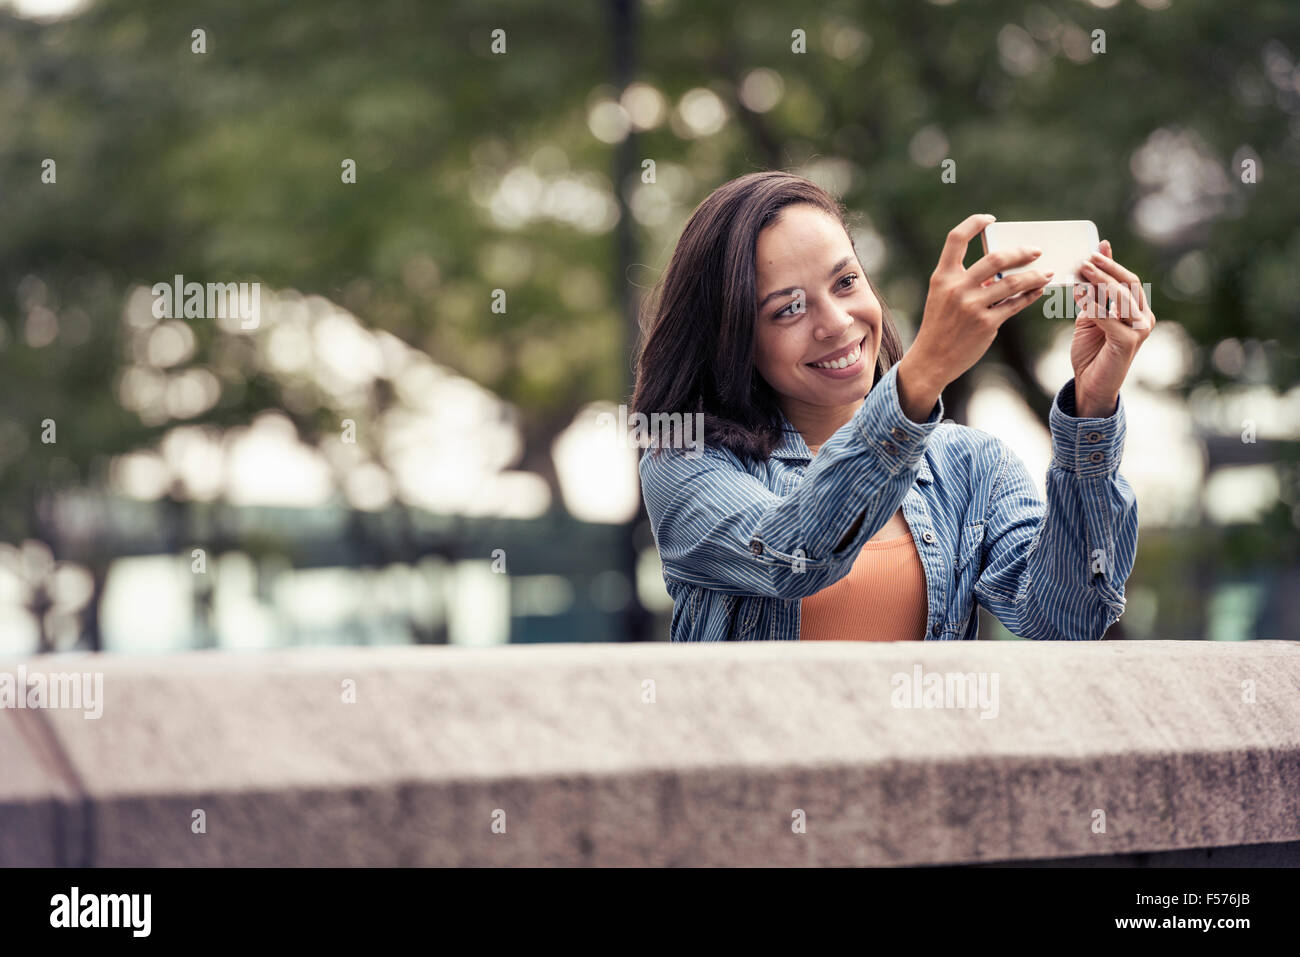 Una donna di scattare una fotografia o un selfie con uno smart phone Foto Stock